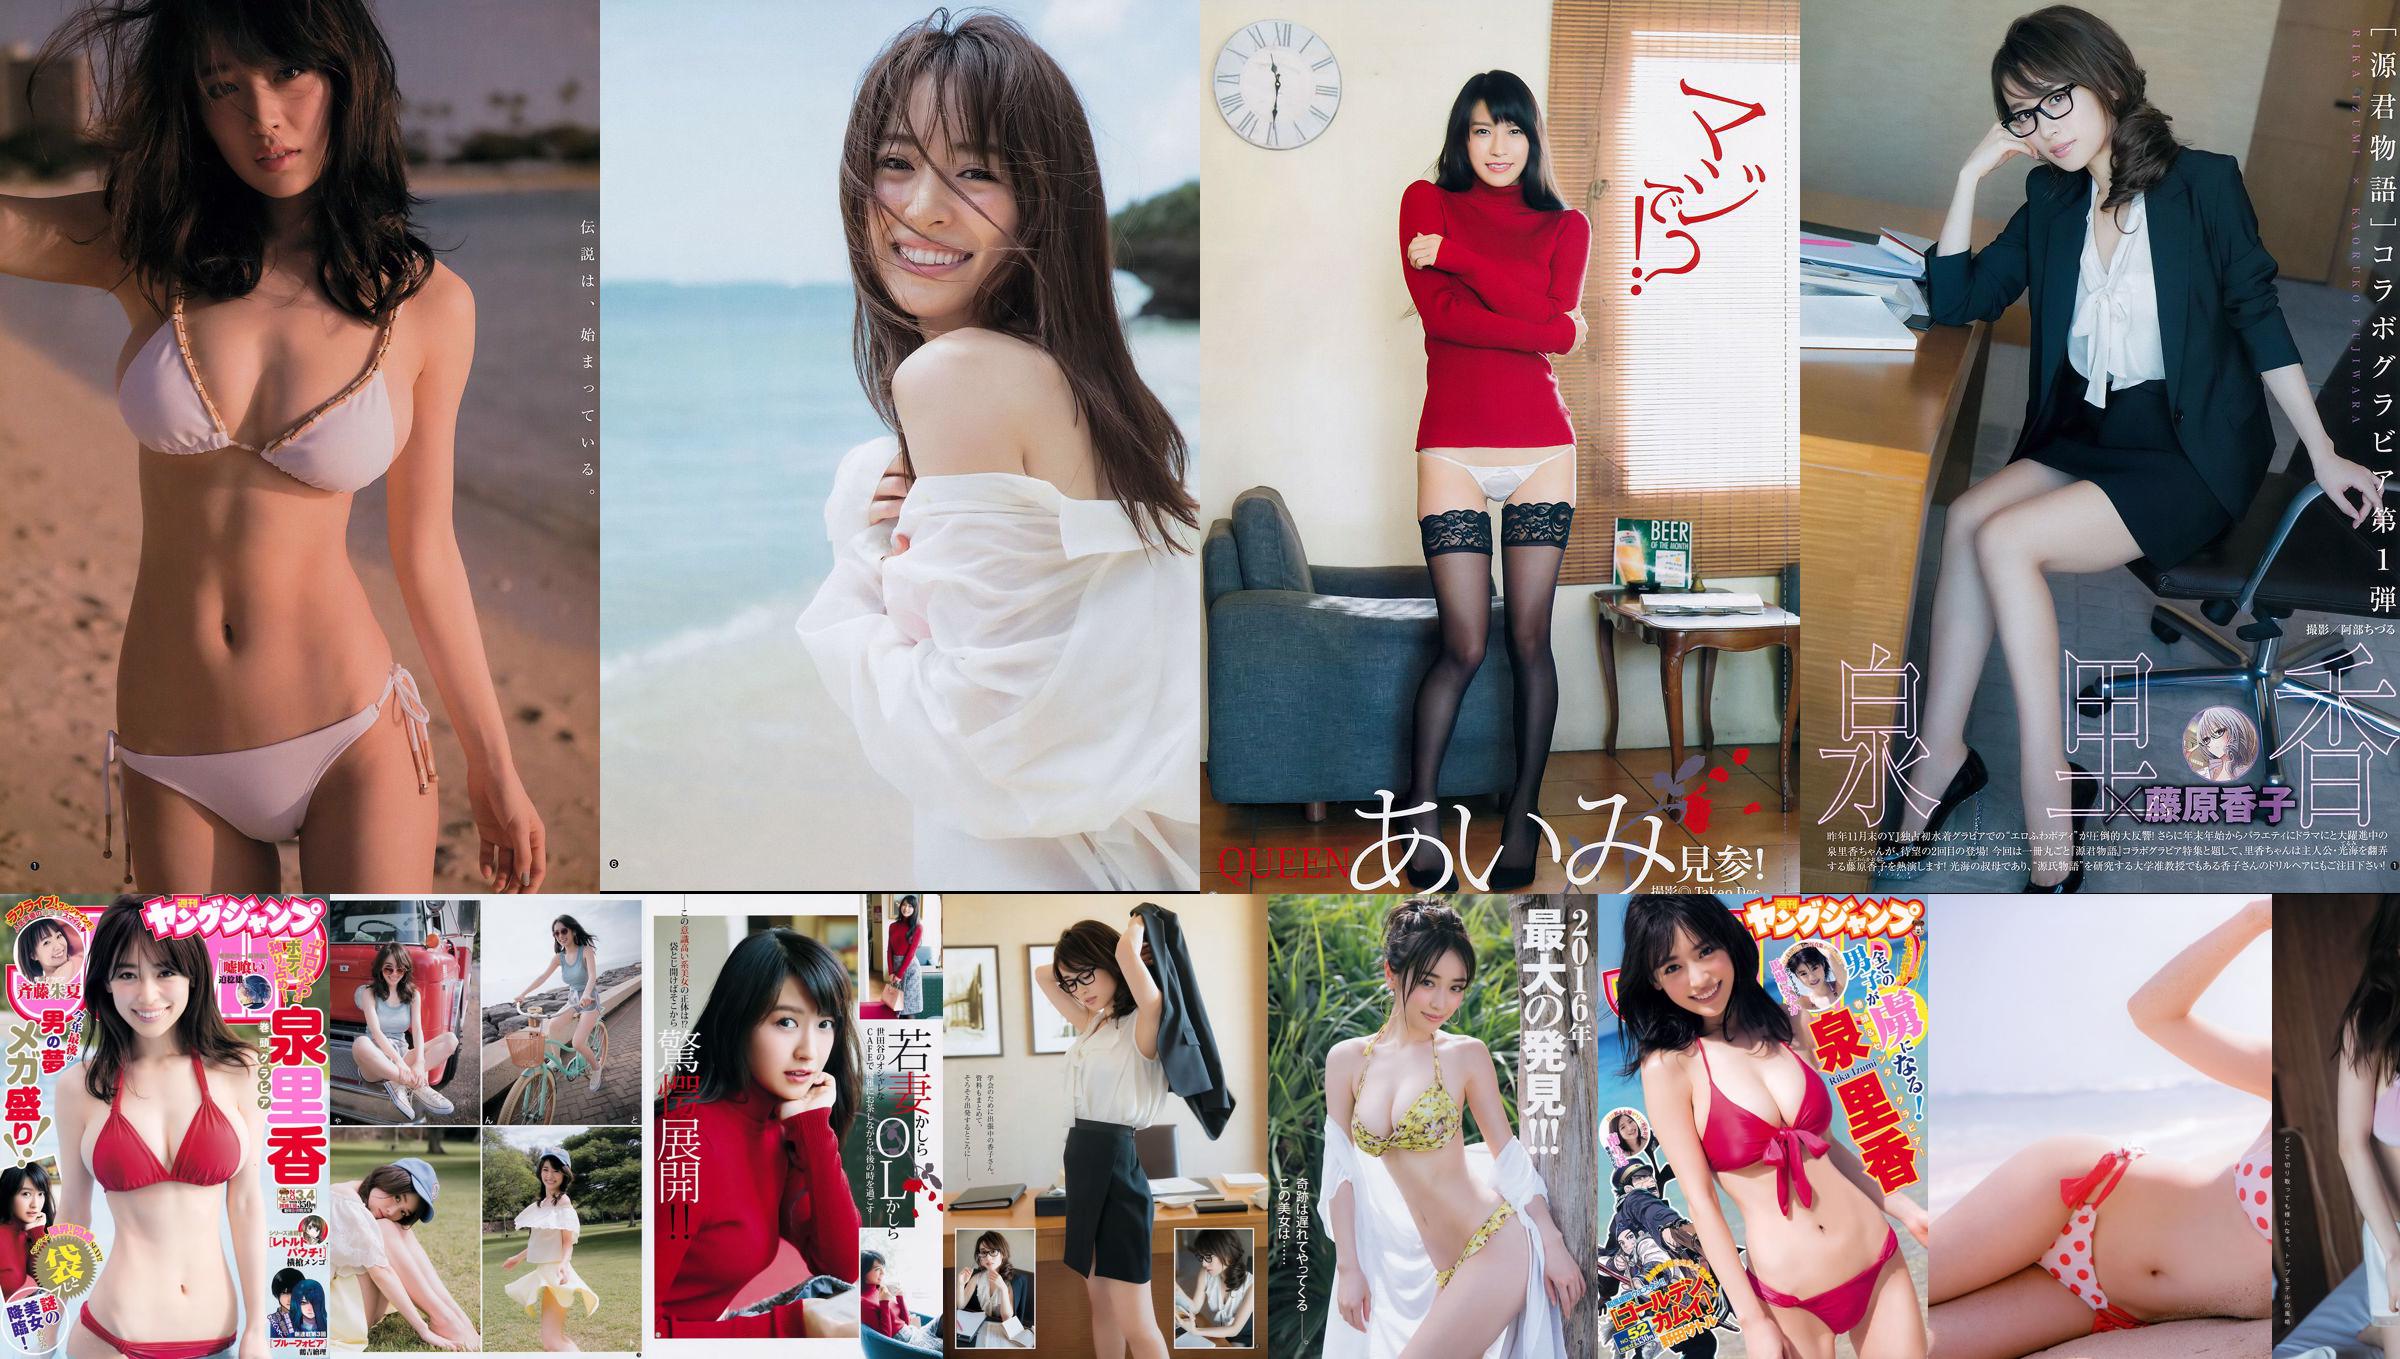 R Rika Izumi Aimi Shuka Saito [Wöchentlicher Jungsprung] 2018 Nr. 03-04 Fotomagazin No.f8a850 Seite 1